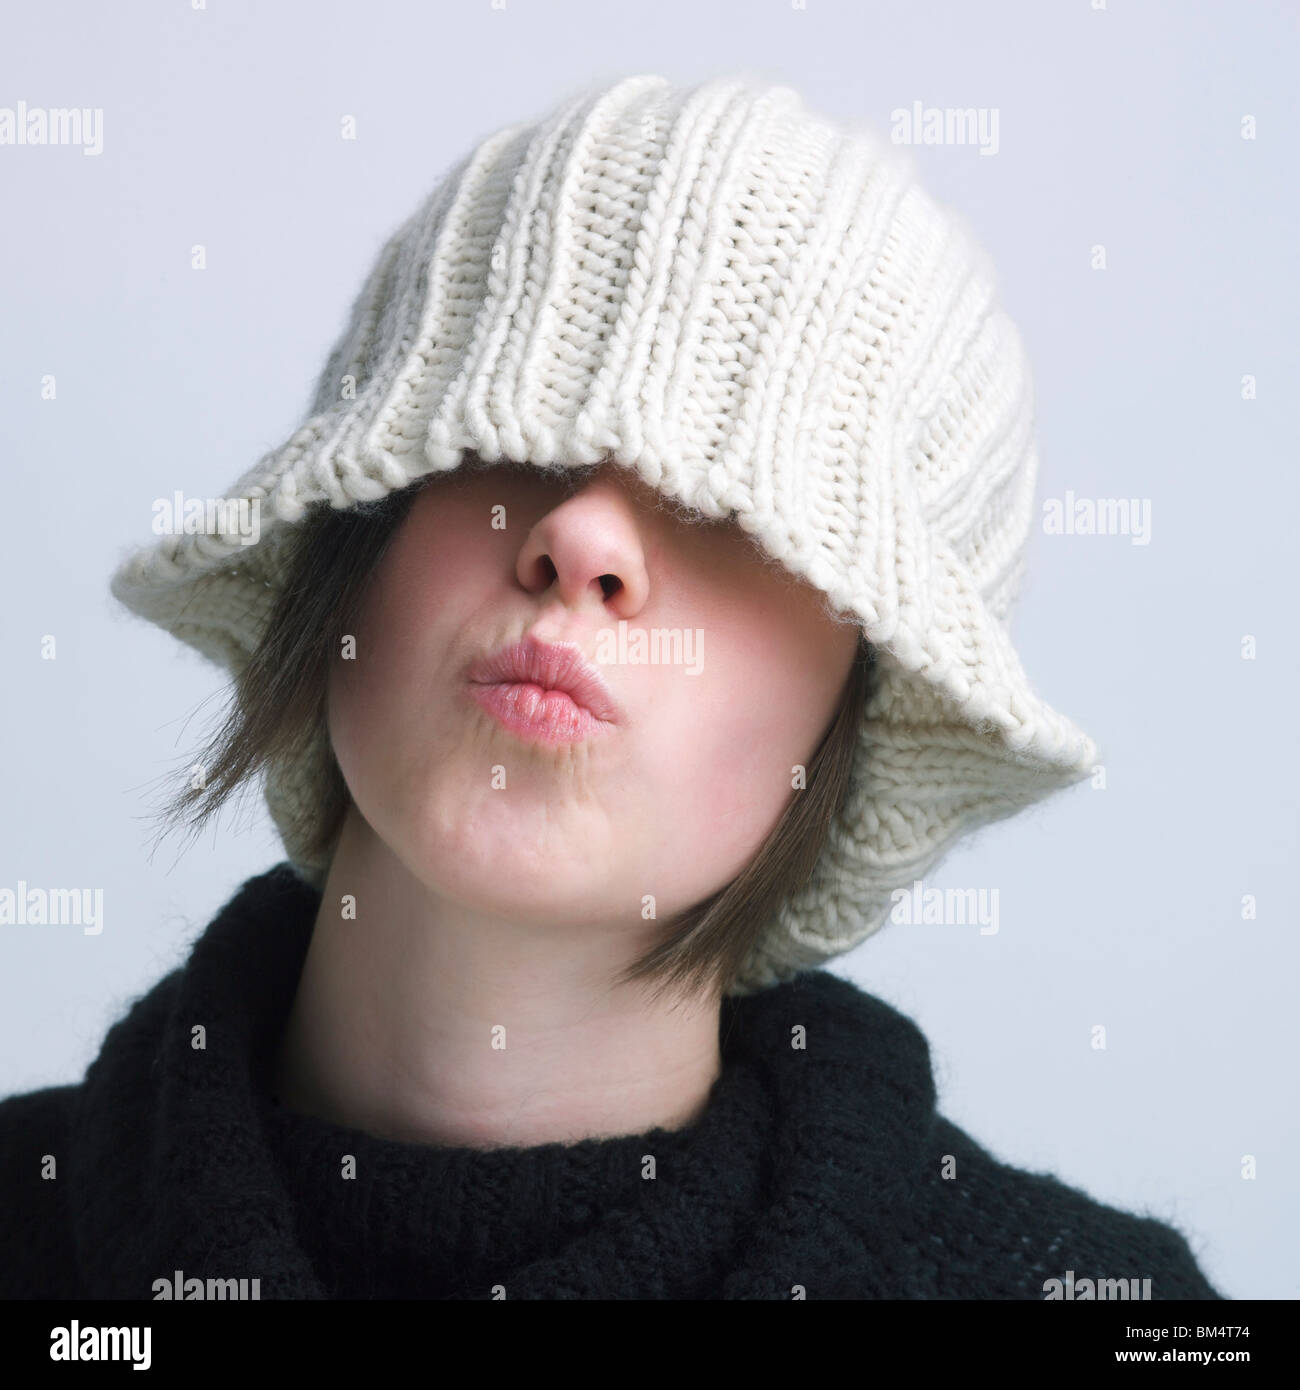 Girl couvrant les yeux avec un bonnet de laine Photo Stock - Alamy